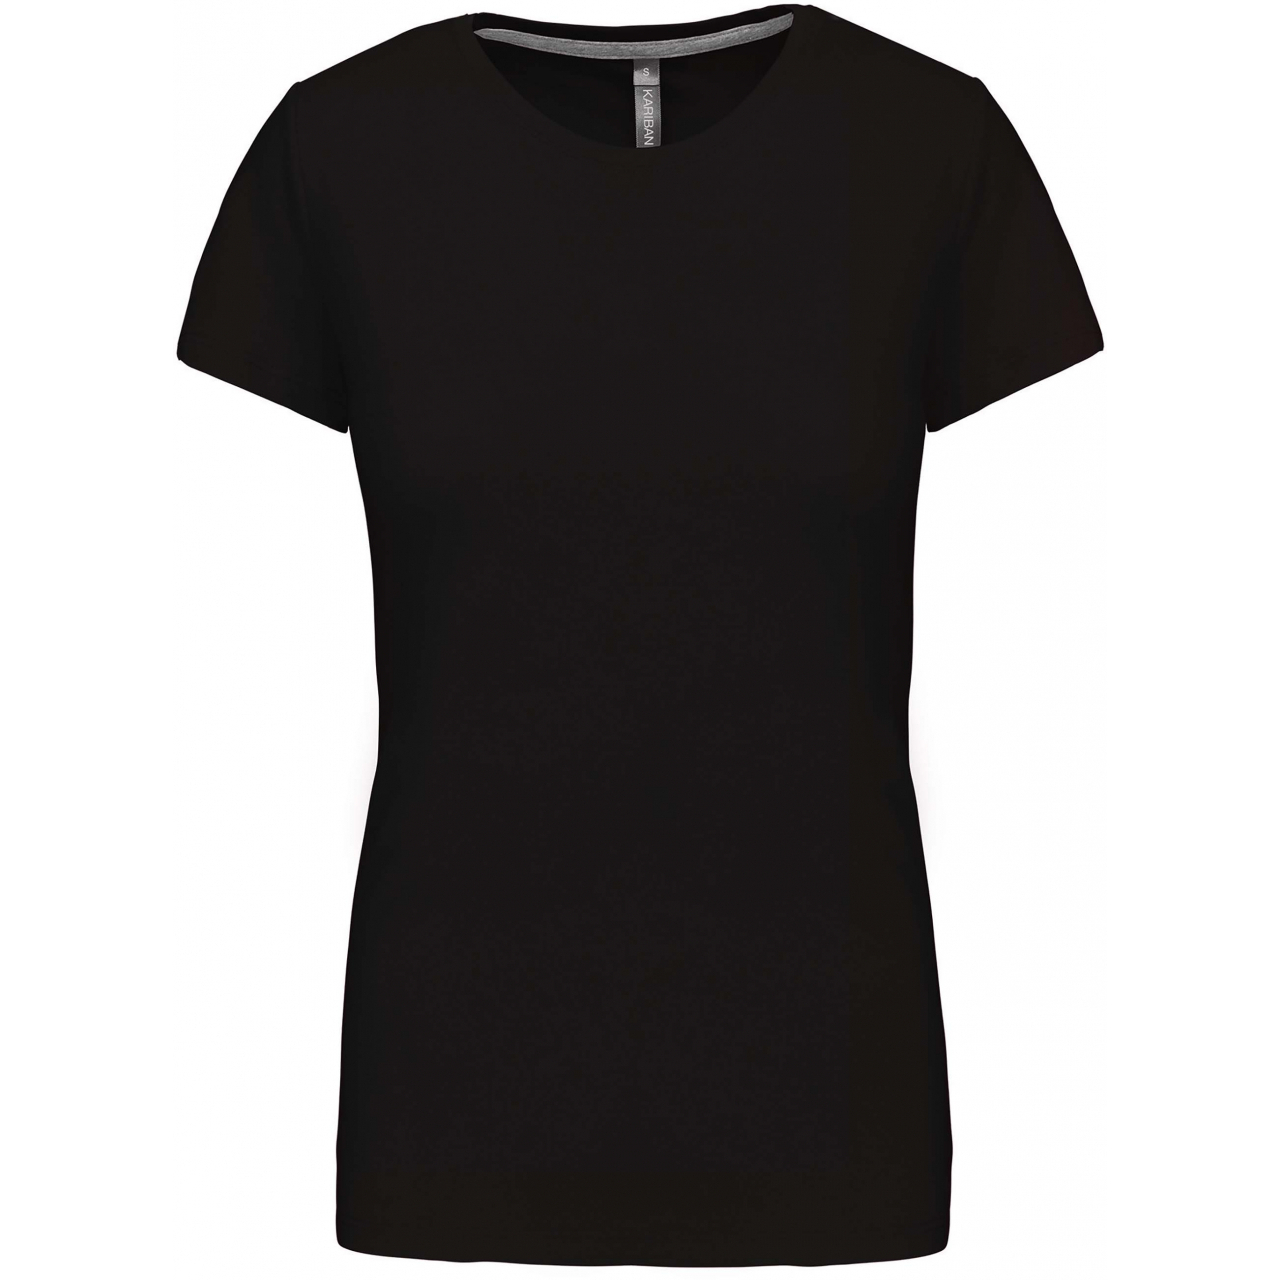 Dámské tričko Kariban s krátkým rukávem - černé, 3XL